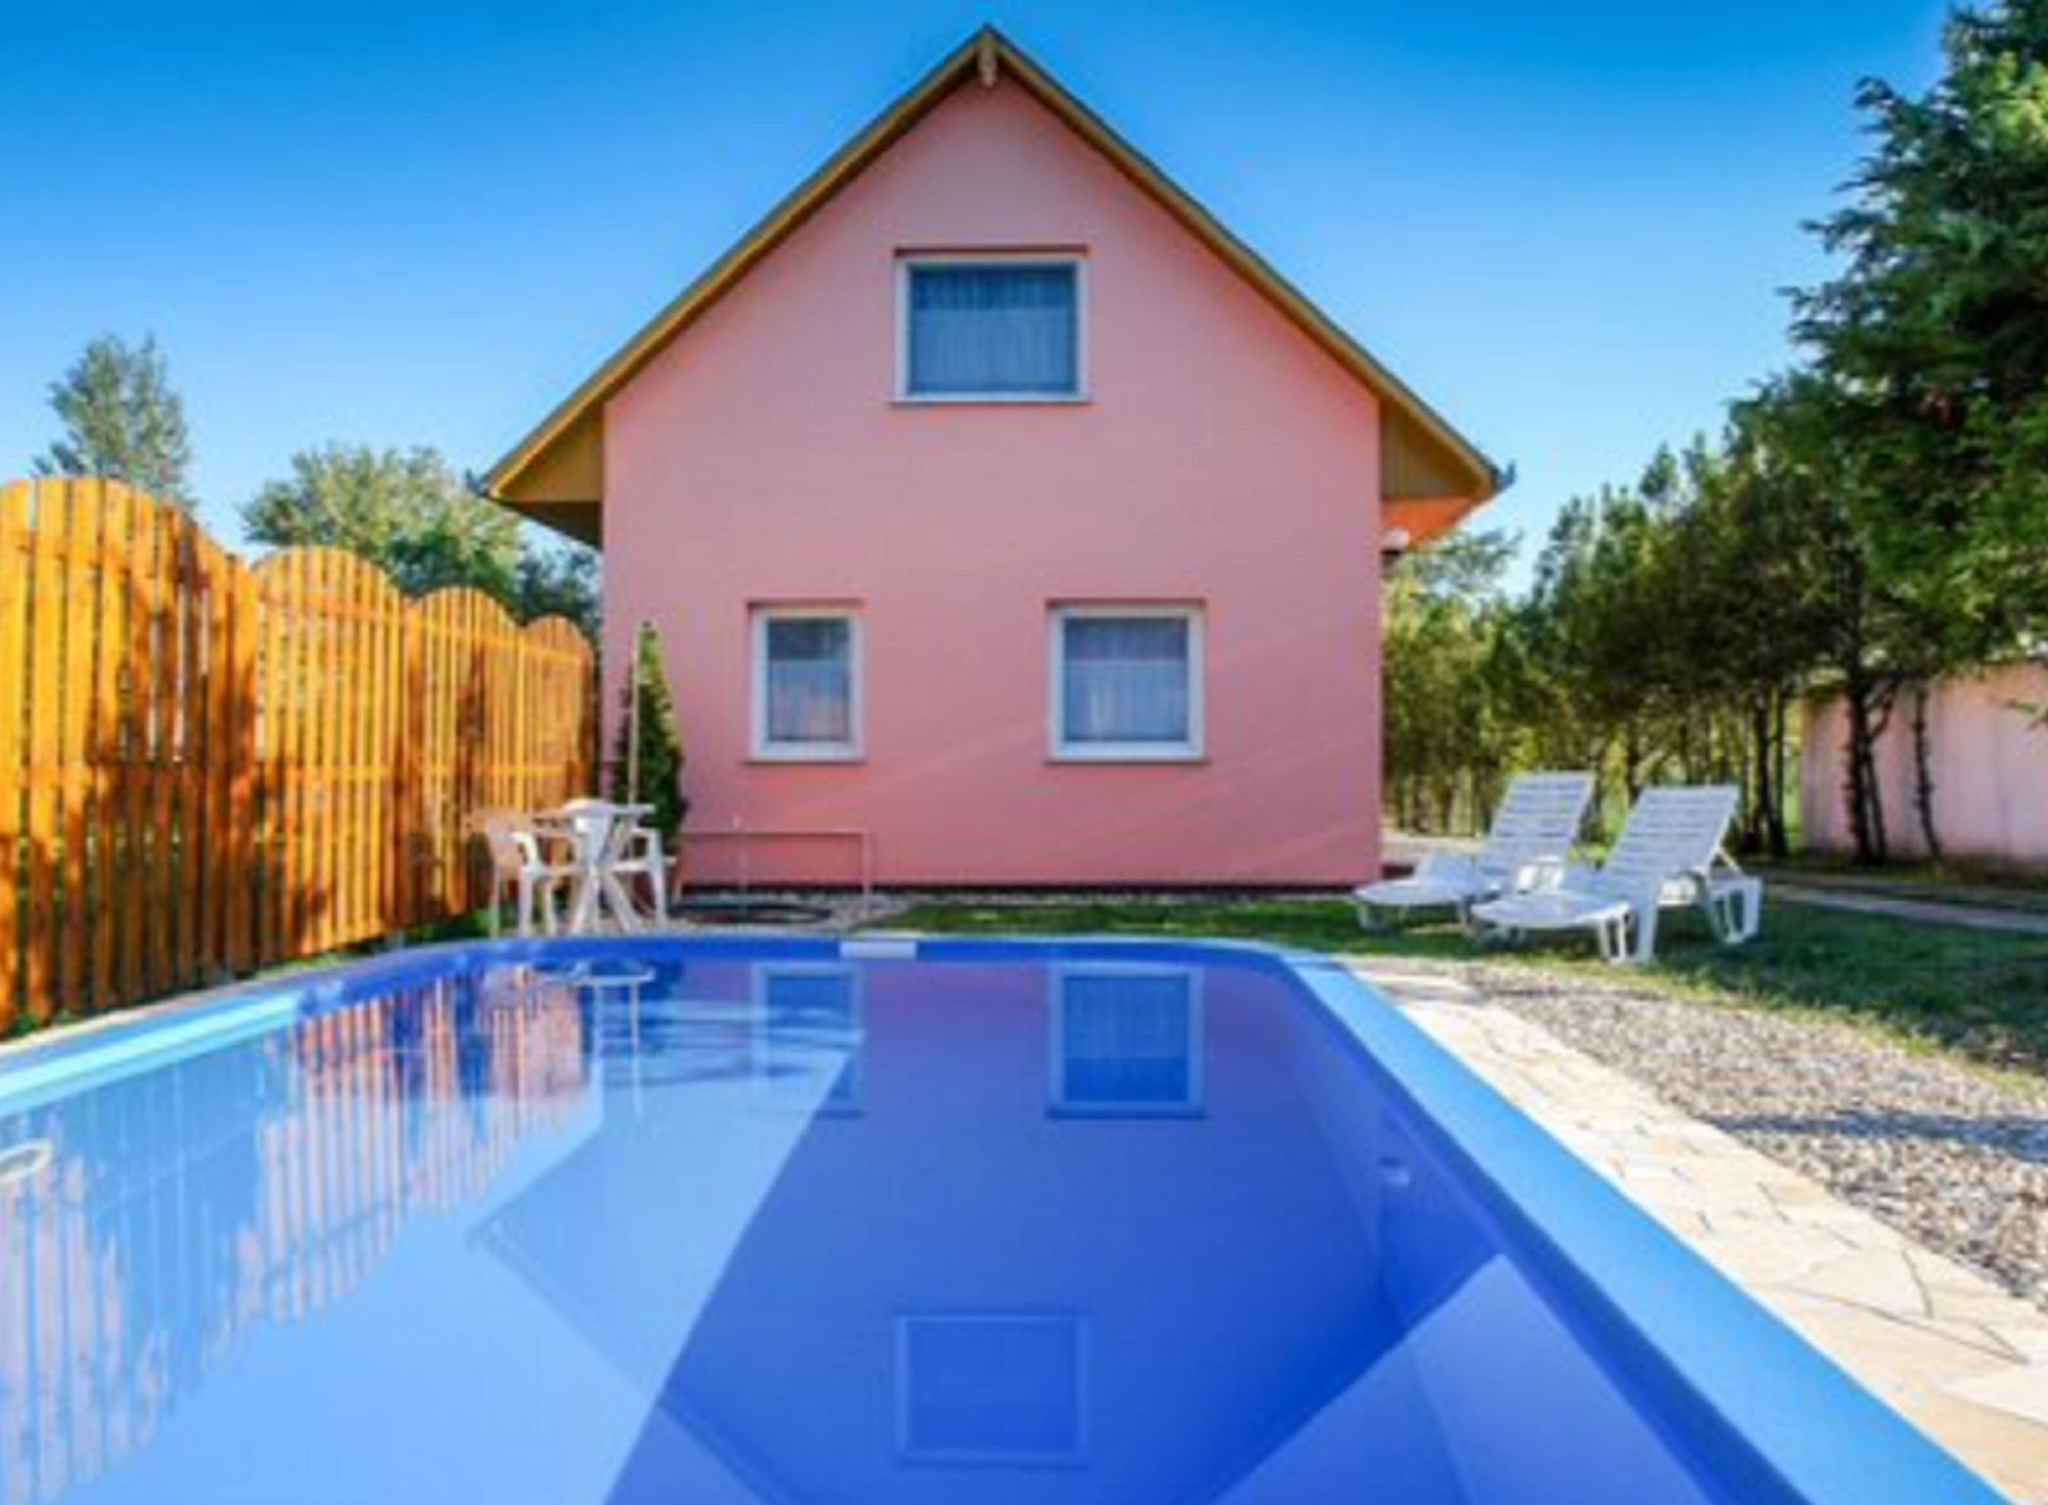 Ferienhaus mit Pool und Gartenpavillon  am Balaton Plattensee